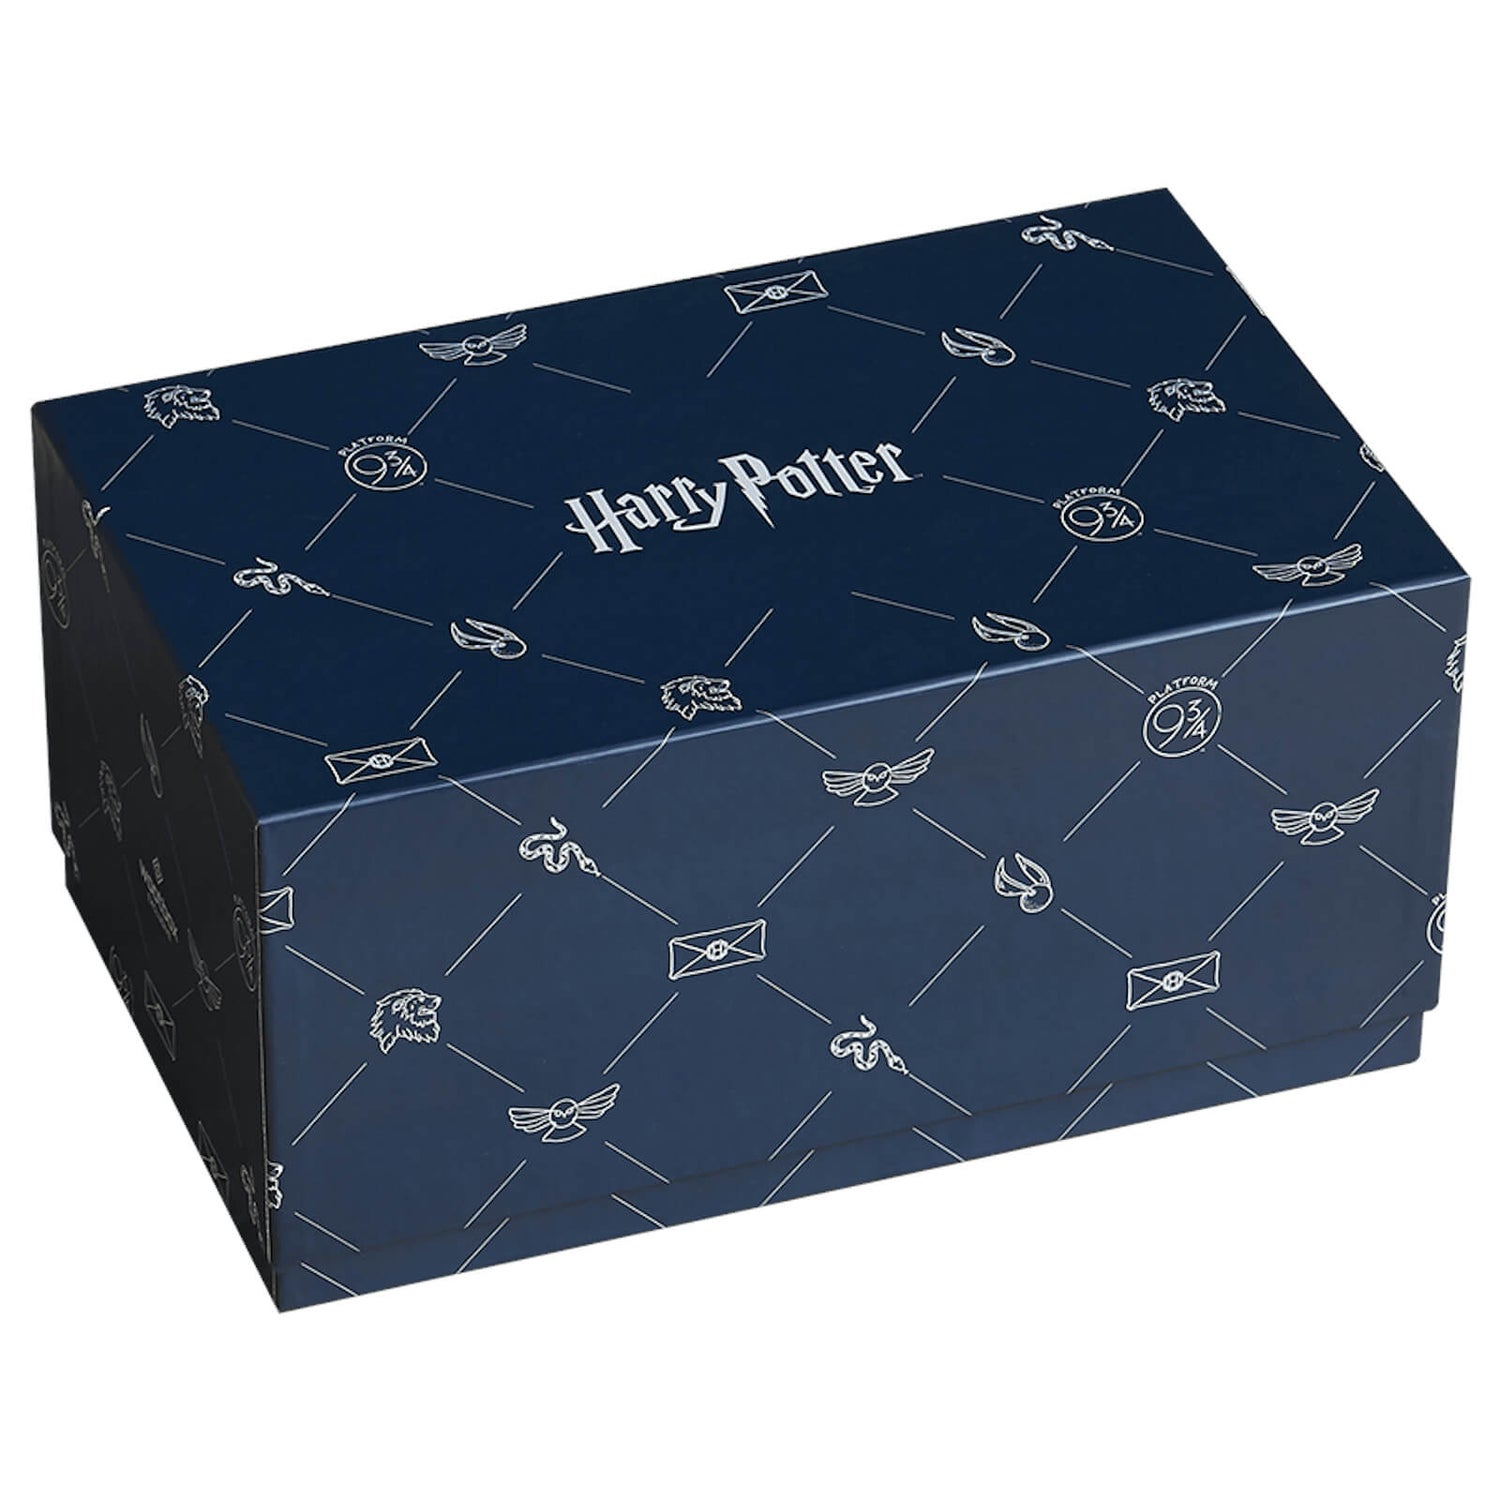 Mystery Box - Harry Potter Jan 2019